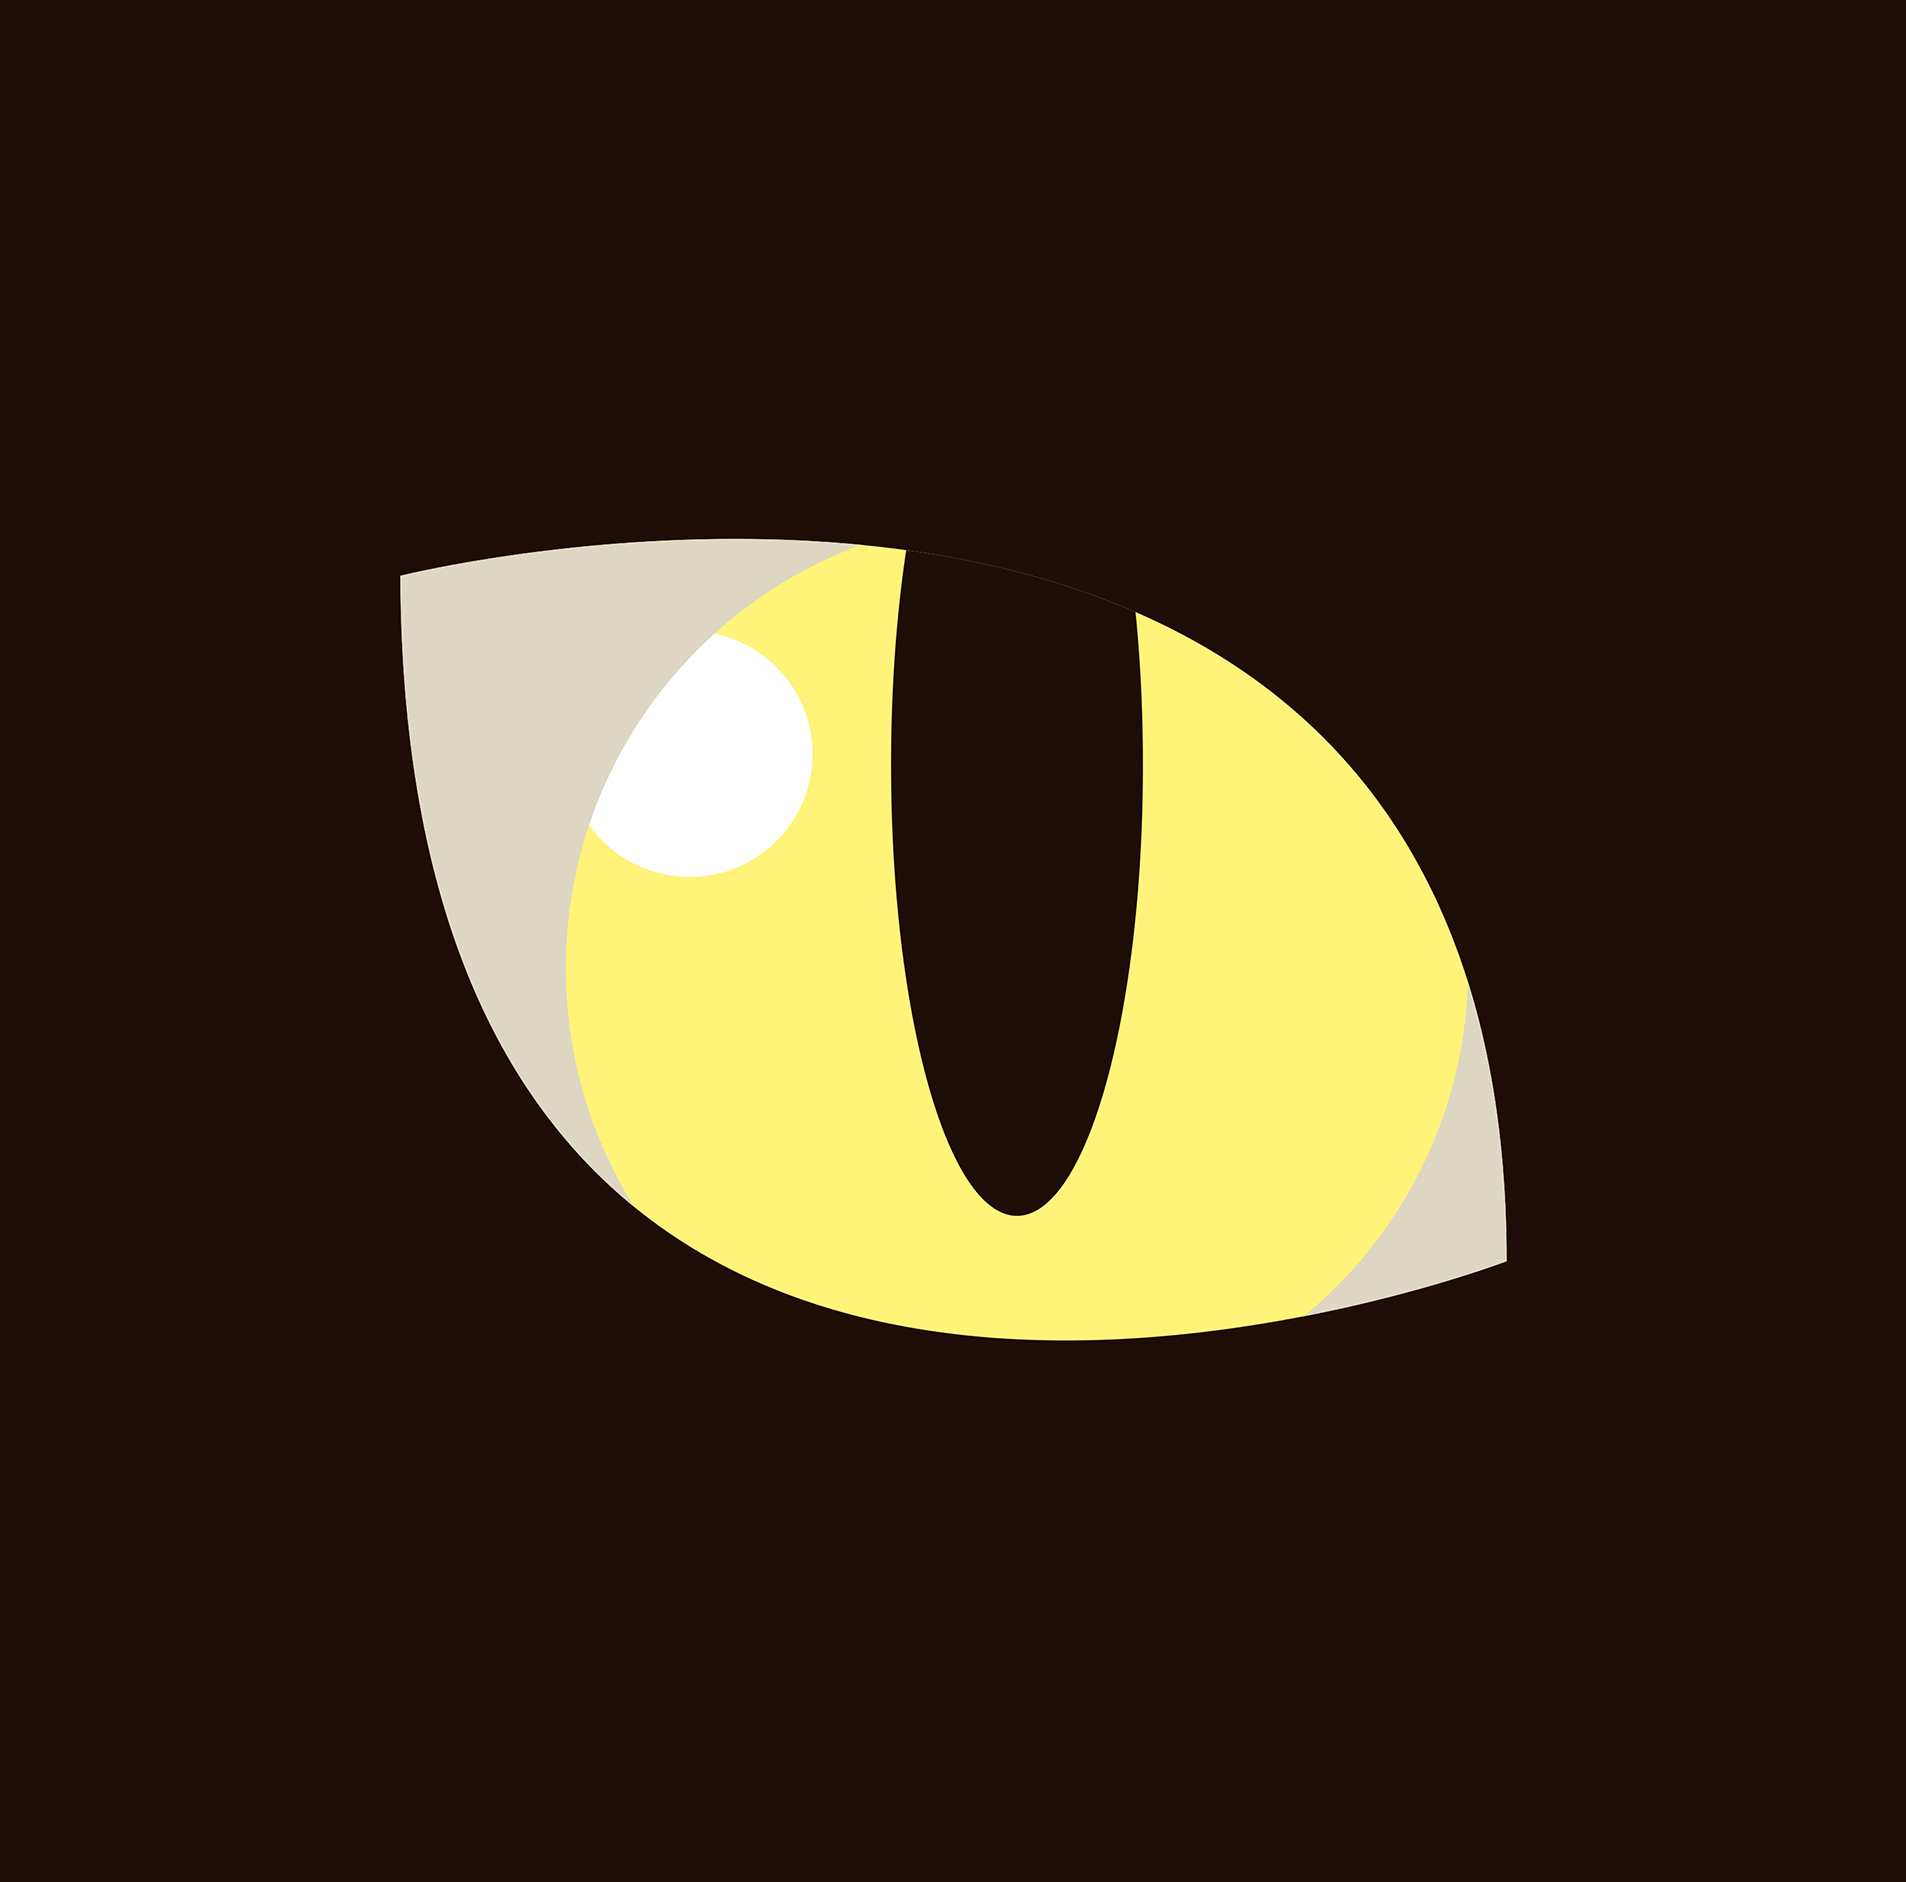 椎名林檎『私は猫の目』ジャケット